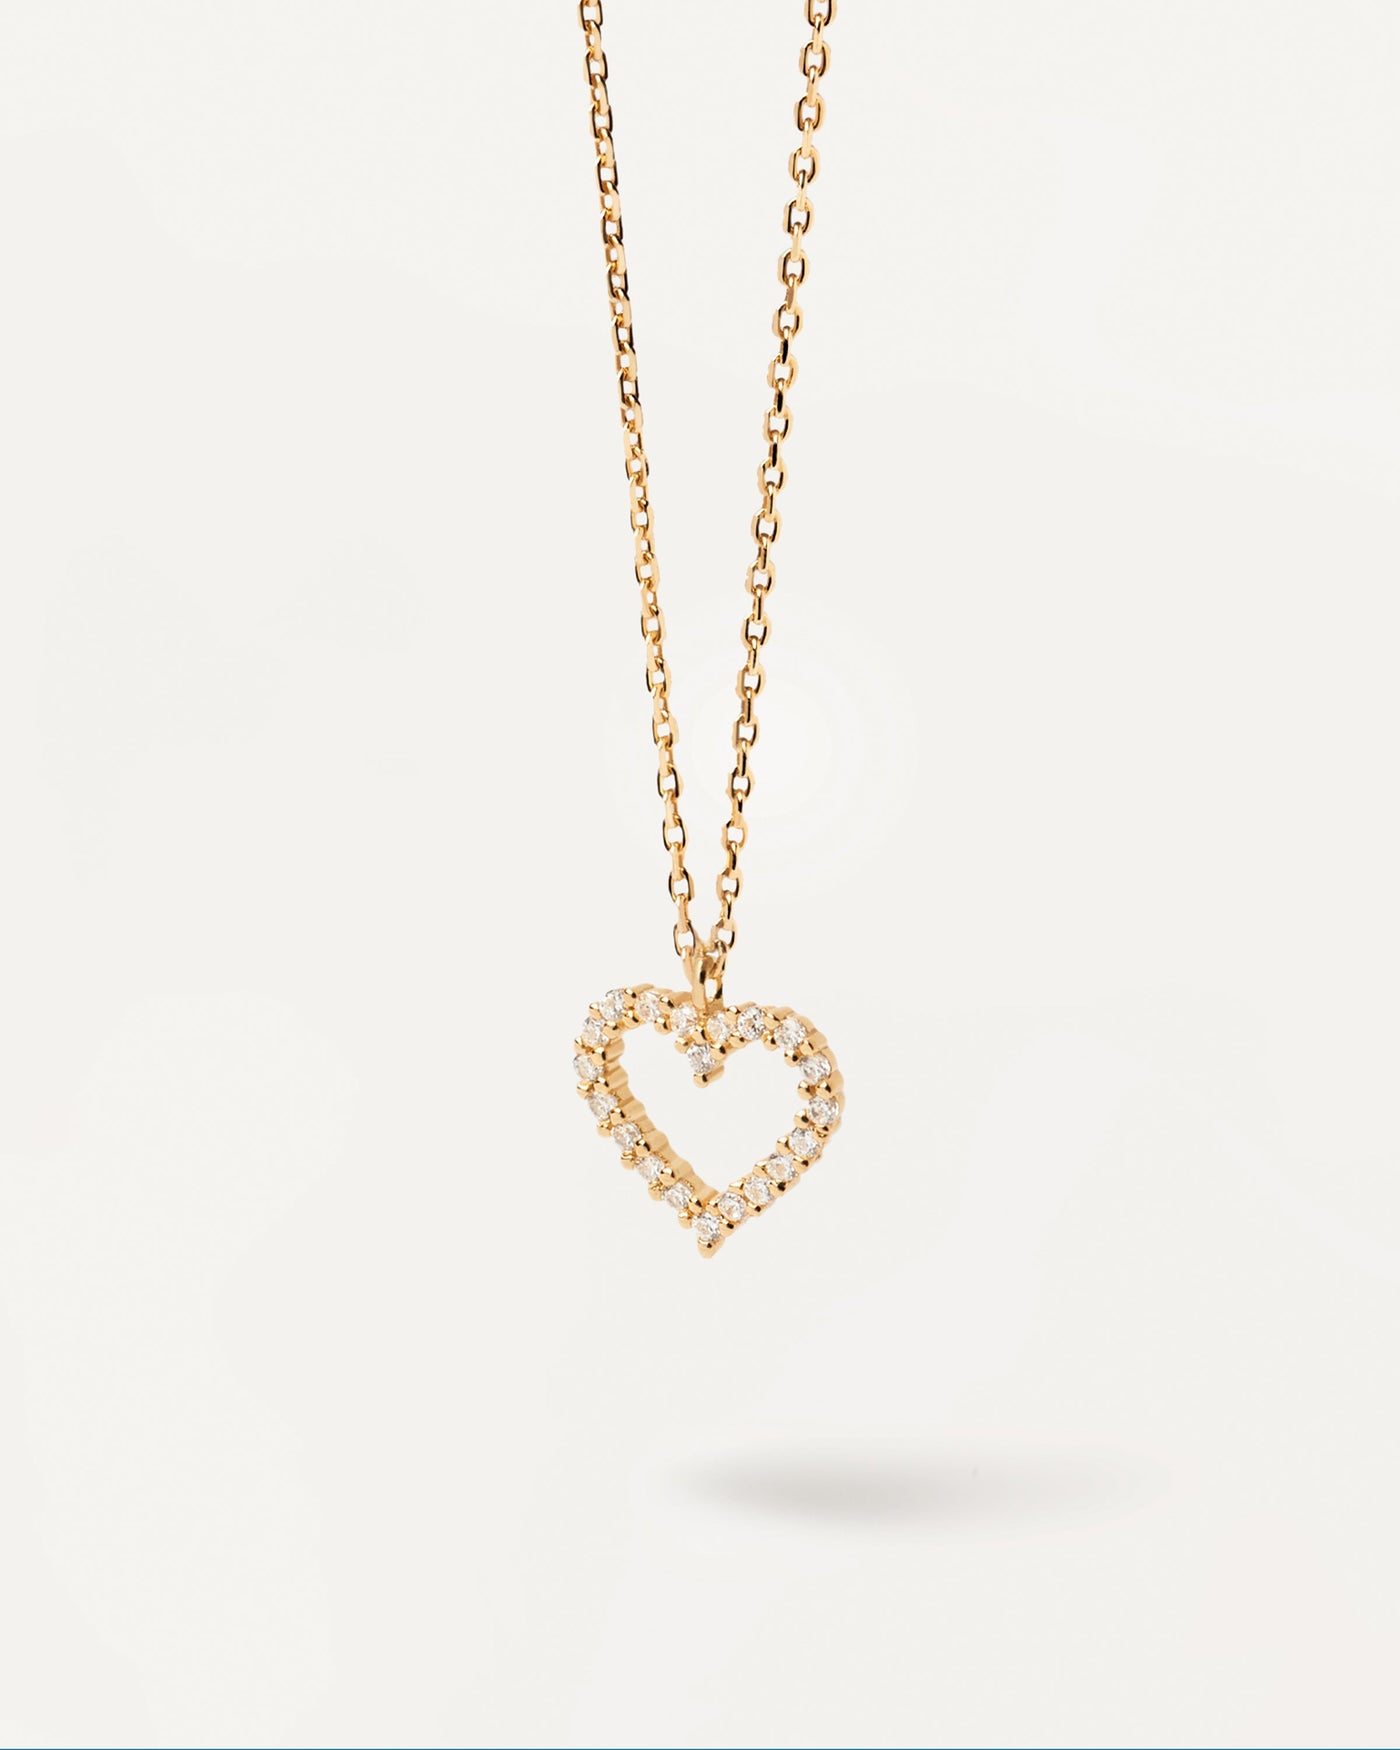 White Heart Halskette. halskette aus 18k vergoldetem sterlingsilber mit einem herzanhänger und eingesetzten weissen zirkonia-steinen. Erhalten Sie die neuesten Produkte von PDPAOLA. Geben Sie Ihre Bestellung sicher auf und erhalten Sie diesen Bestseller.